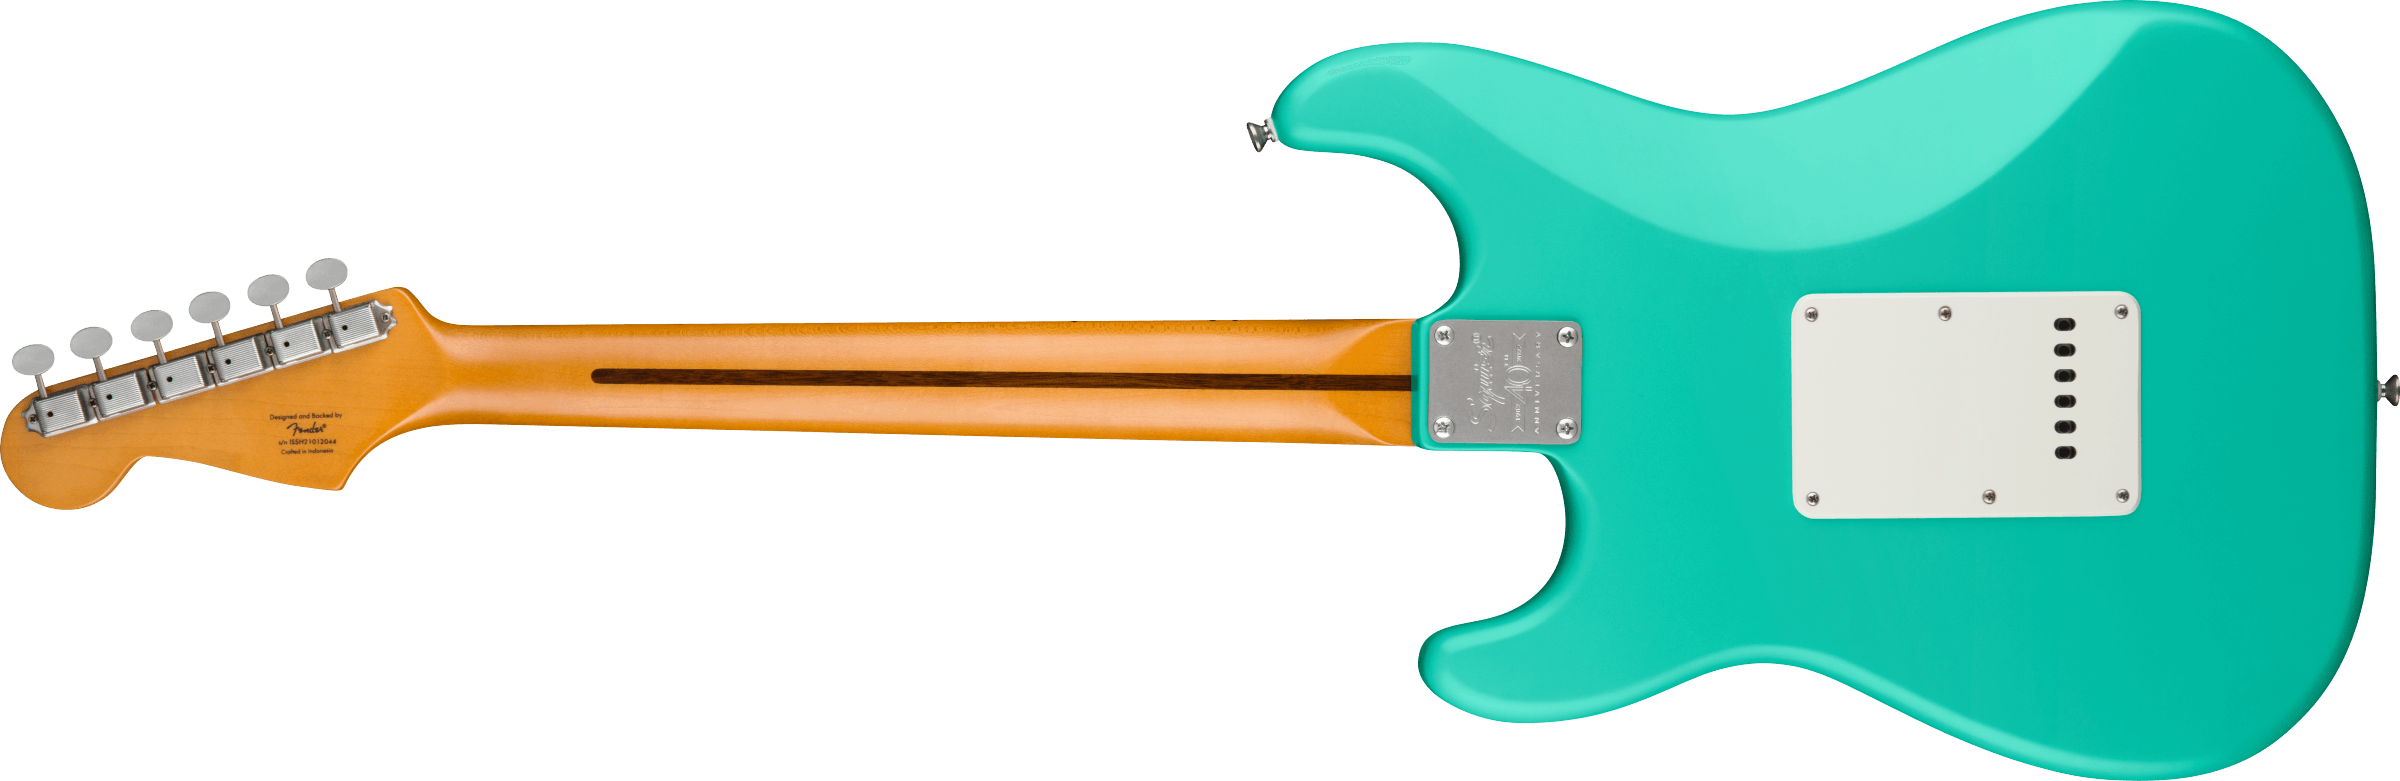 Squier Strat 40th Anniversary Vintage Edition Mn - Satin Seafoam Green - Guitarra eléctrica con forma de str. - Variation 1